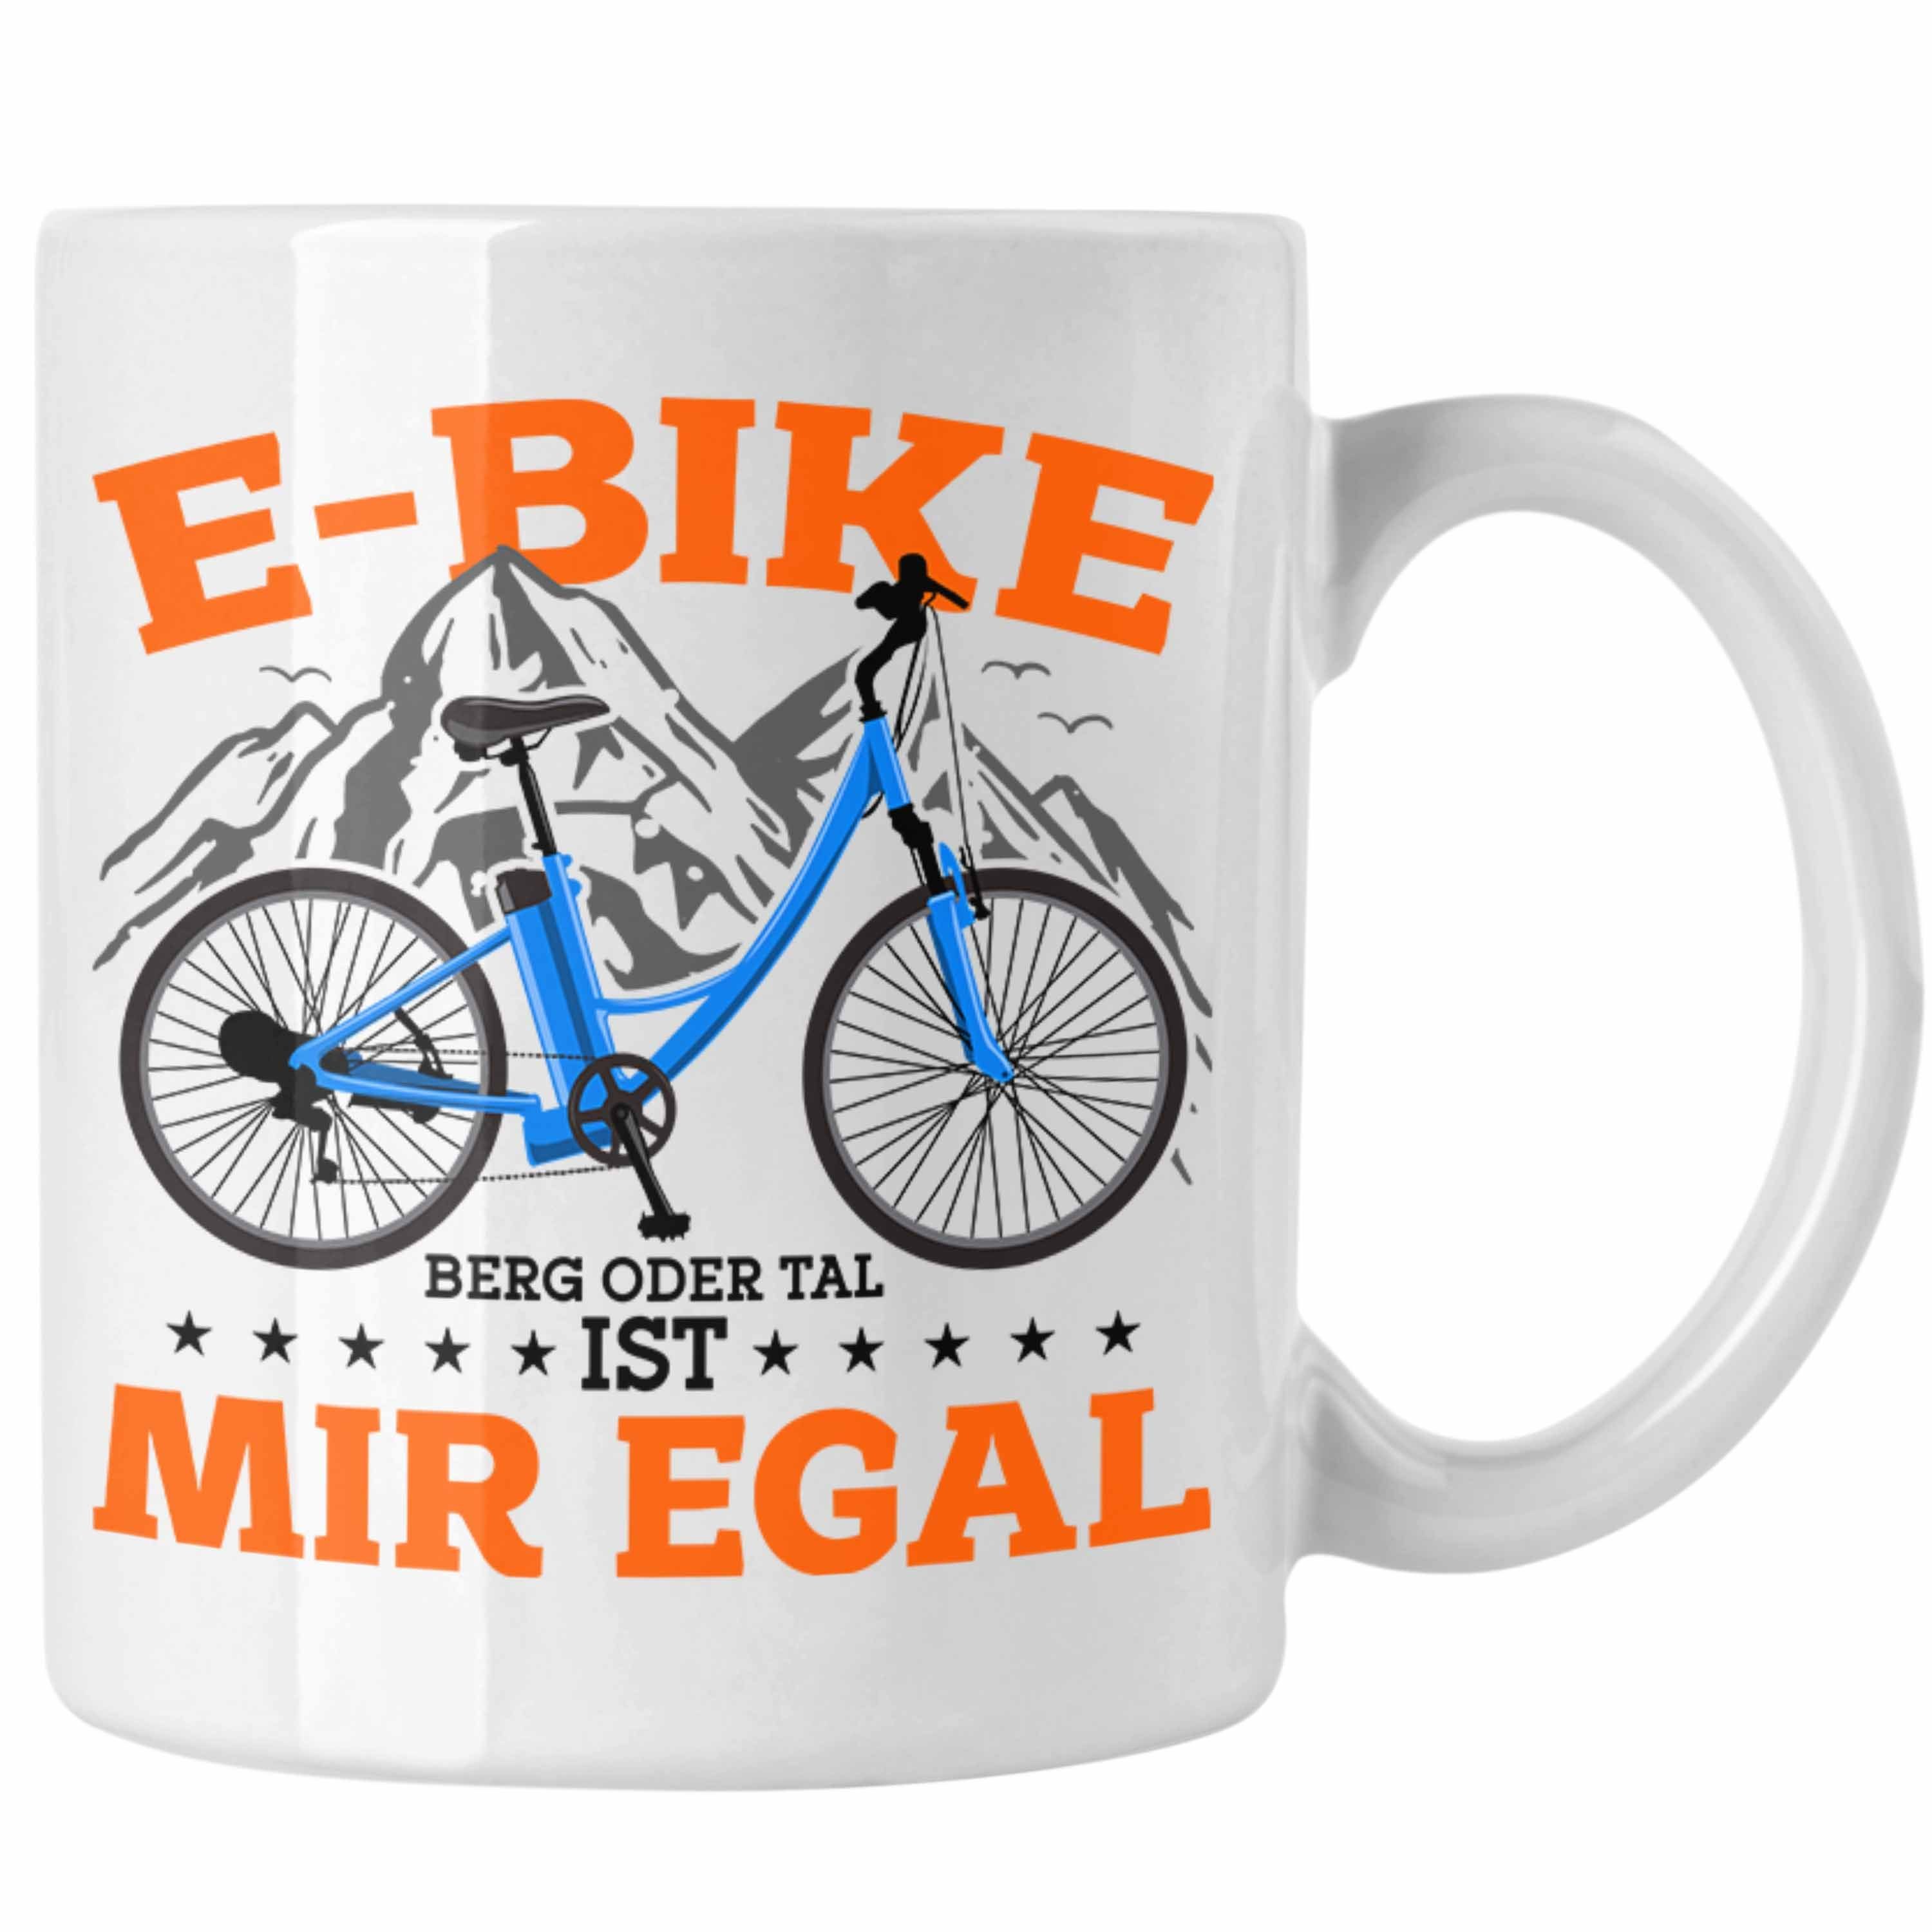 Tasse Sprüche Trendation Geschenk Geschenkidee Tasse E-Bike Lustige Fans E-Bike Weiss